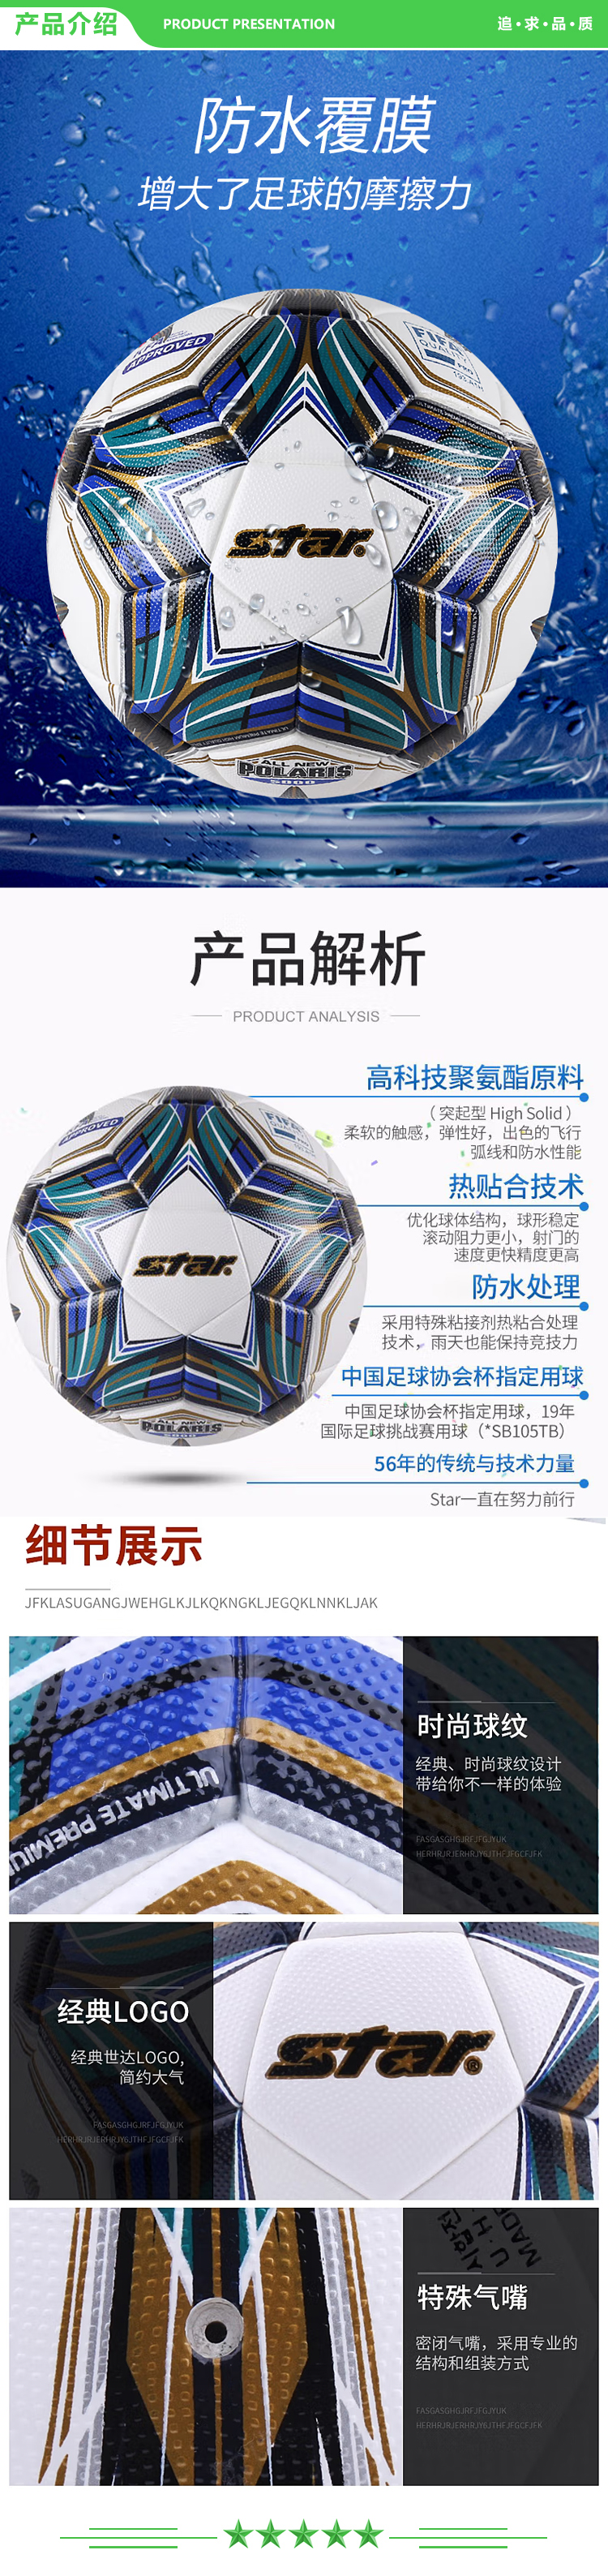 世达 star SB105TB 国际足协公认足球5号大型比赛用球防滑耐磨热贴合足球中冠联赛指定用球 .jpg